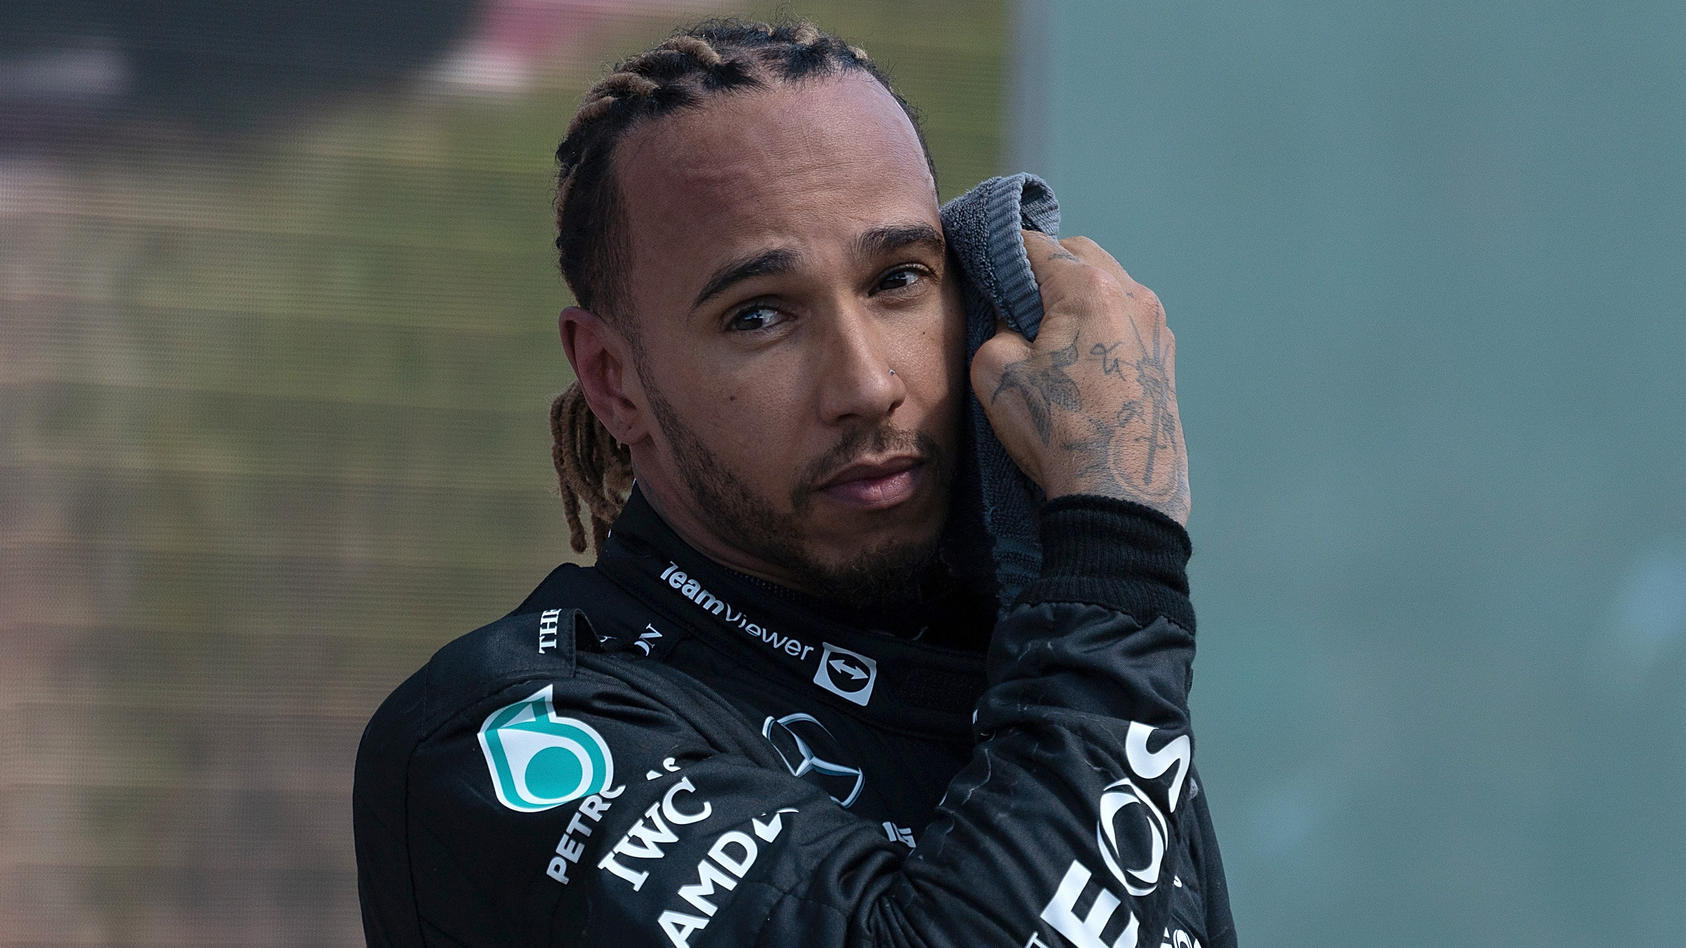 Ist die Zeit von Lewis Hamilton in der Formel 1 abgelaufen?